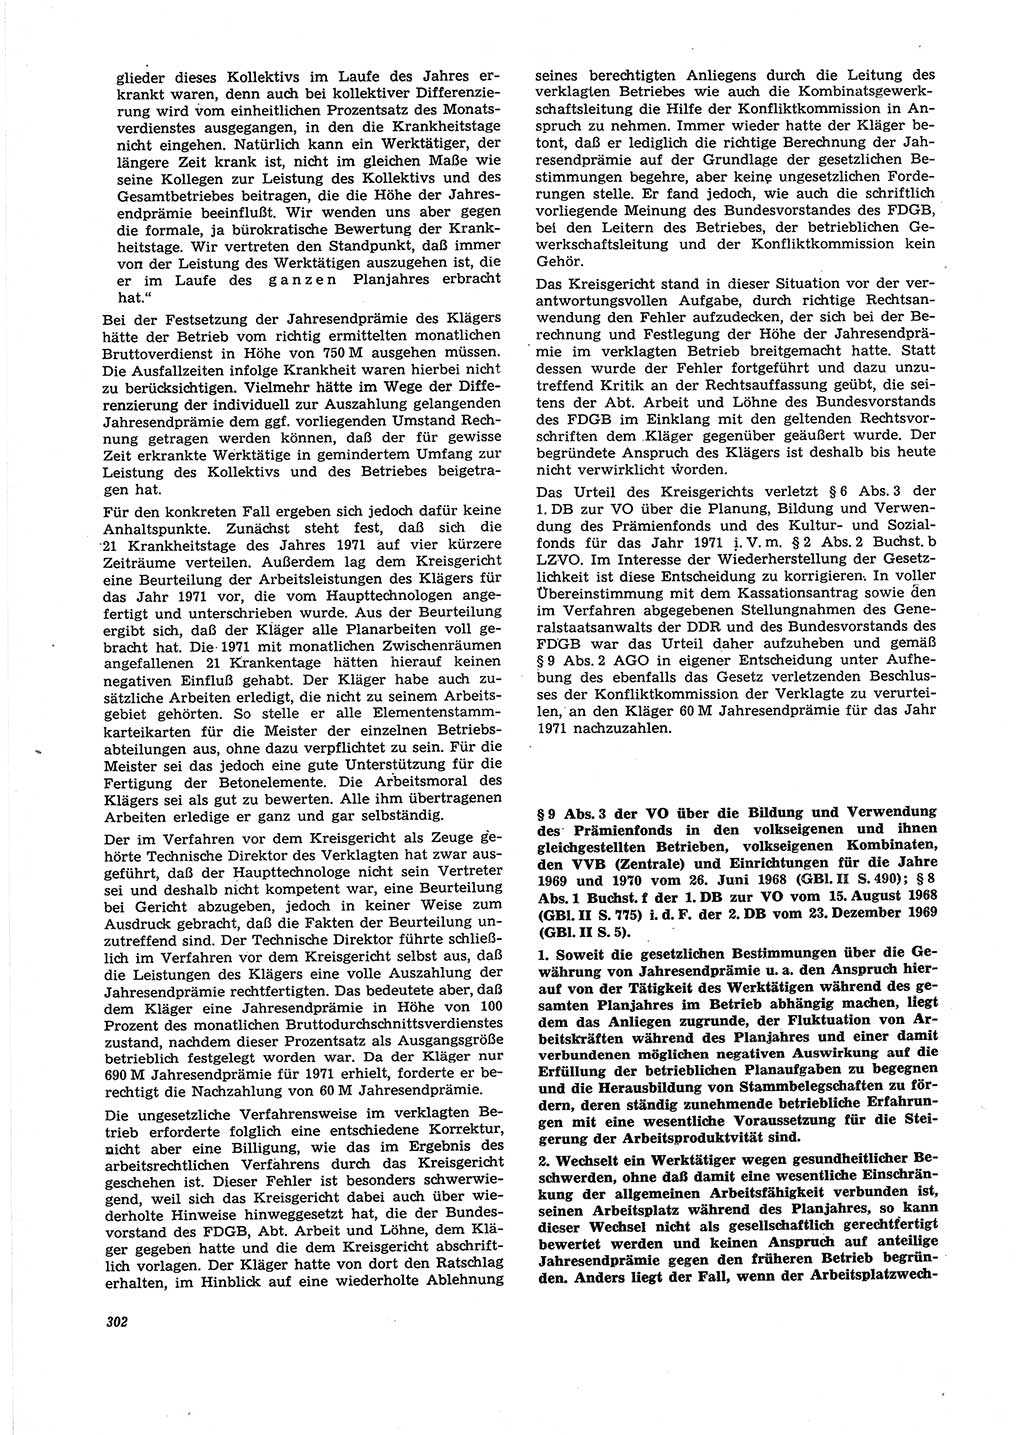 Neue Justiz (NJ), Zeitschrift für Recht und Rechtswissenschaft [Deutsche Demokratische Republik (DDR)], 27. Jahrgang 1973, Seite 302 (NJ DDR 1973, S. 302)